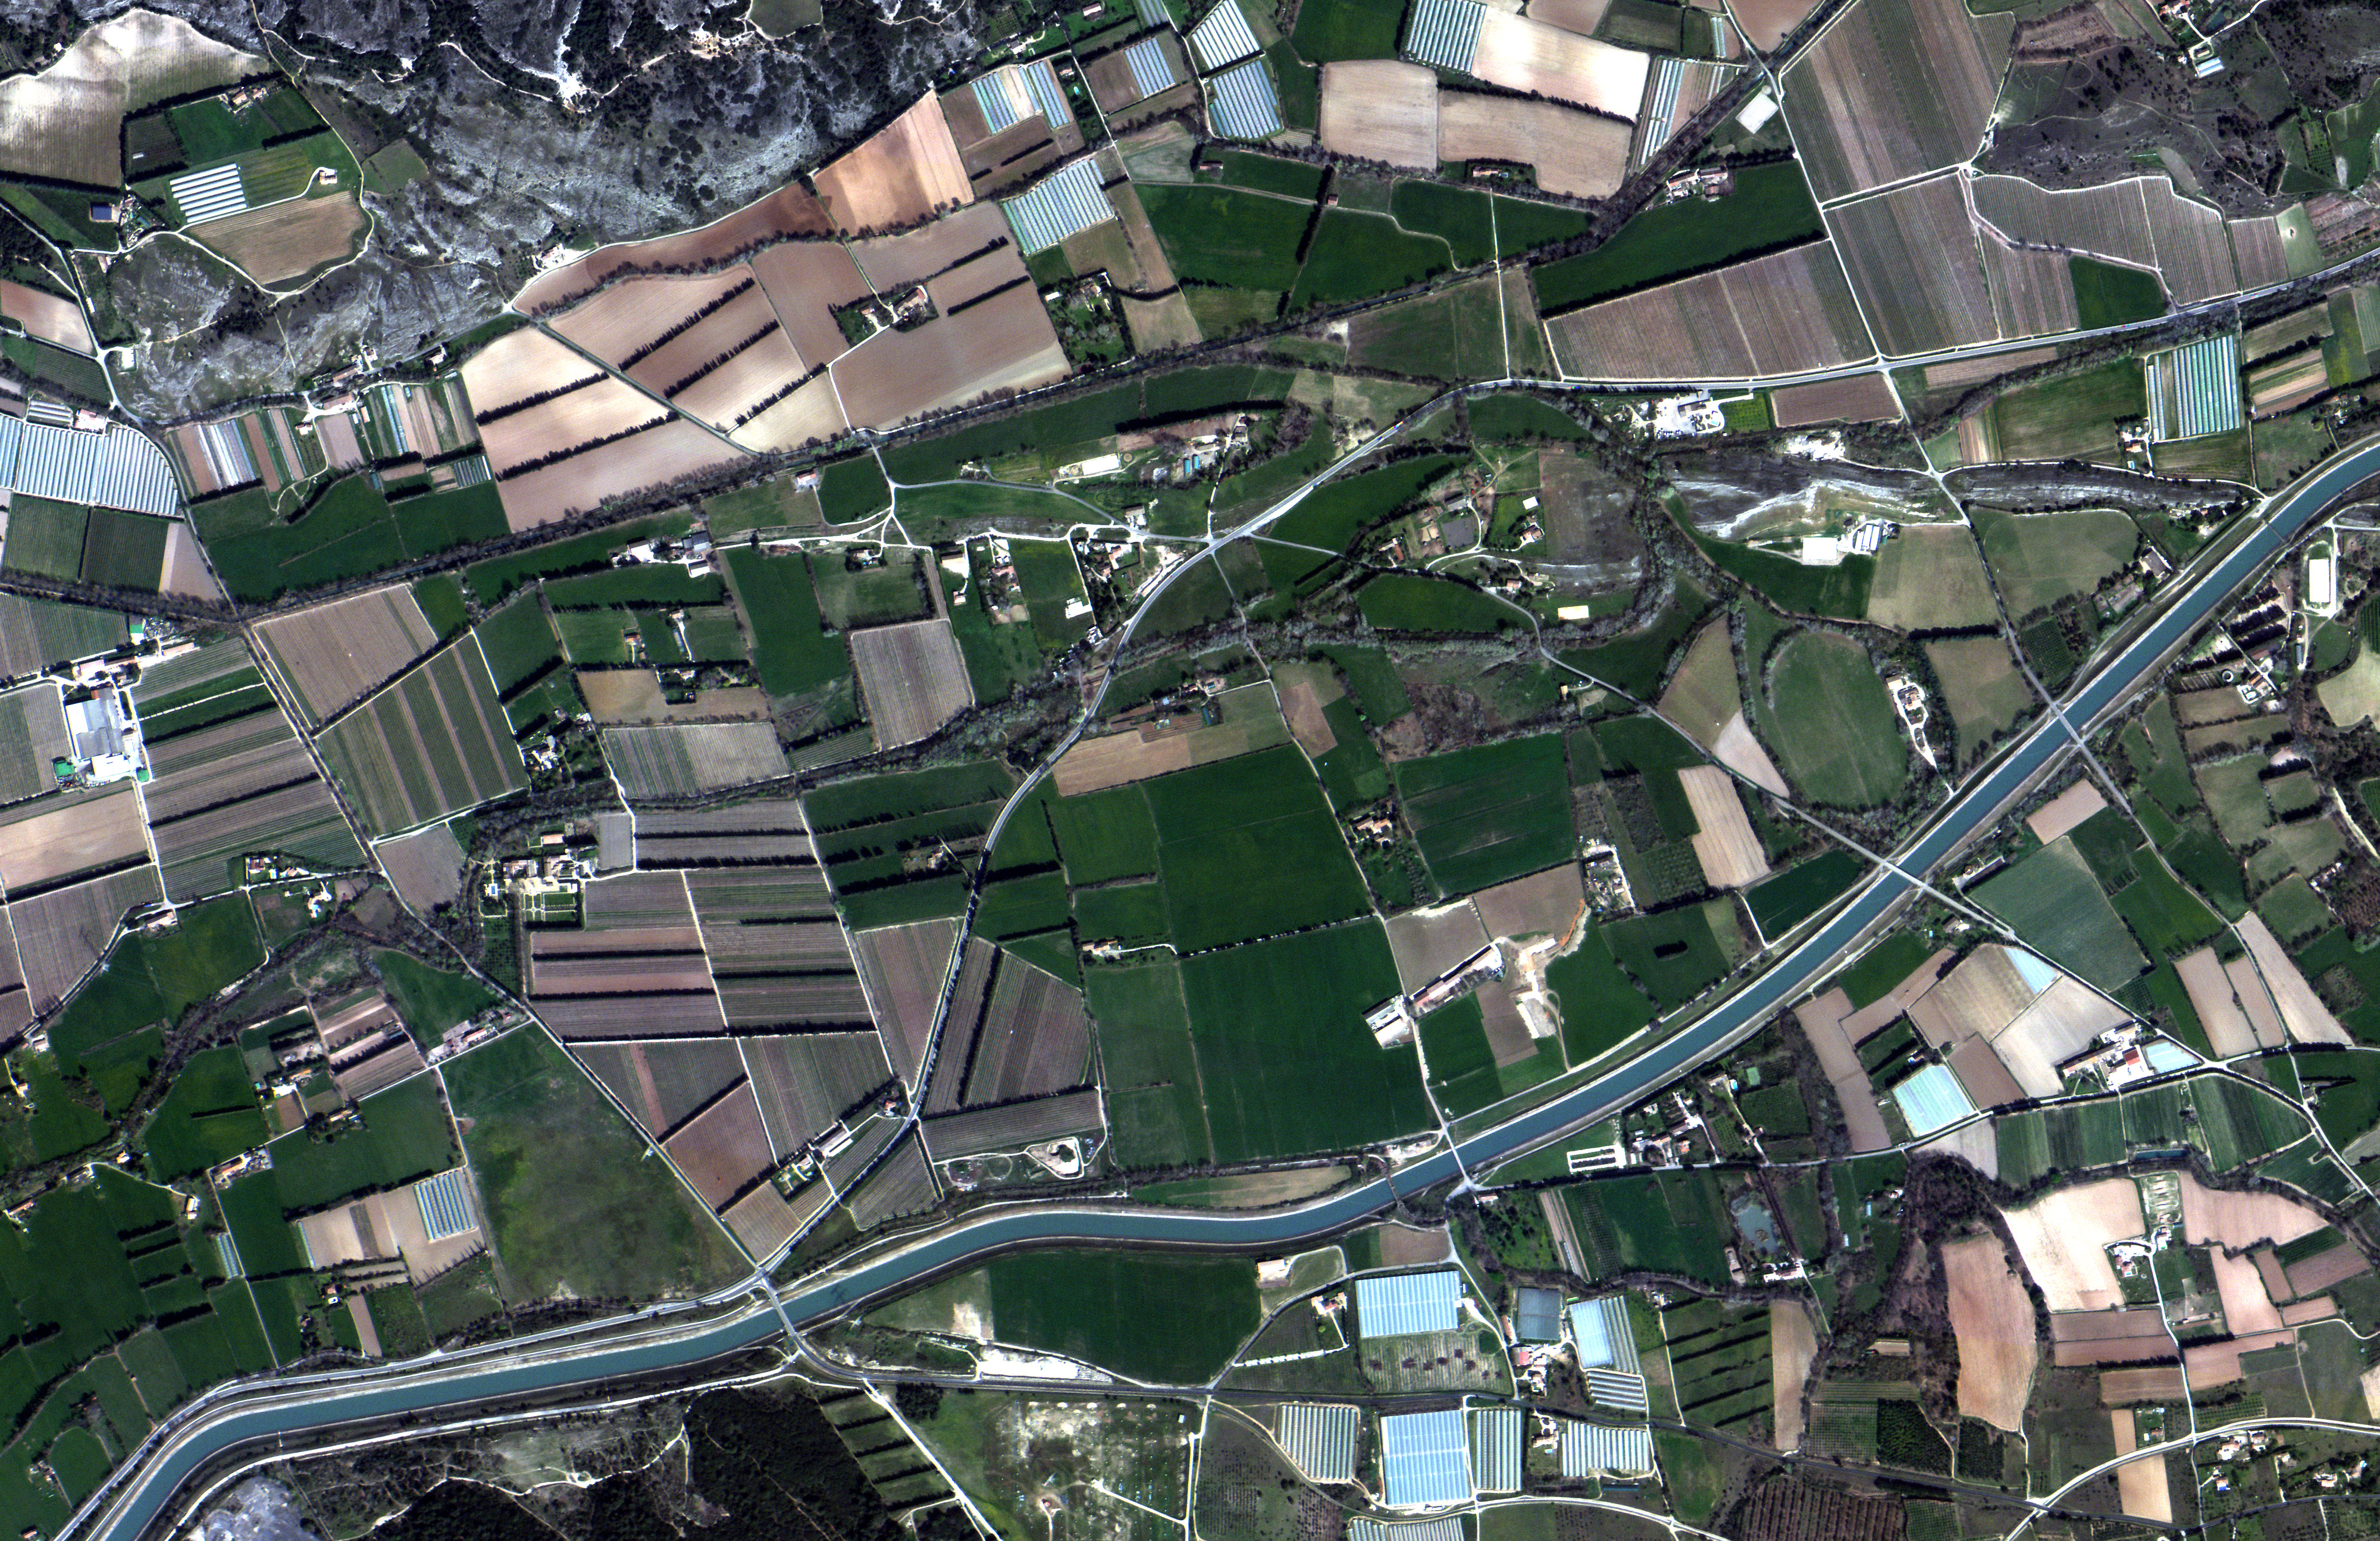 Imagen de Lamanon, Francia tomada con satélites de Satellogic